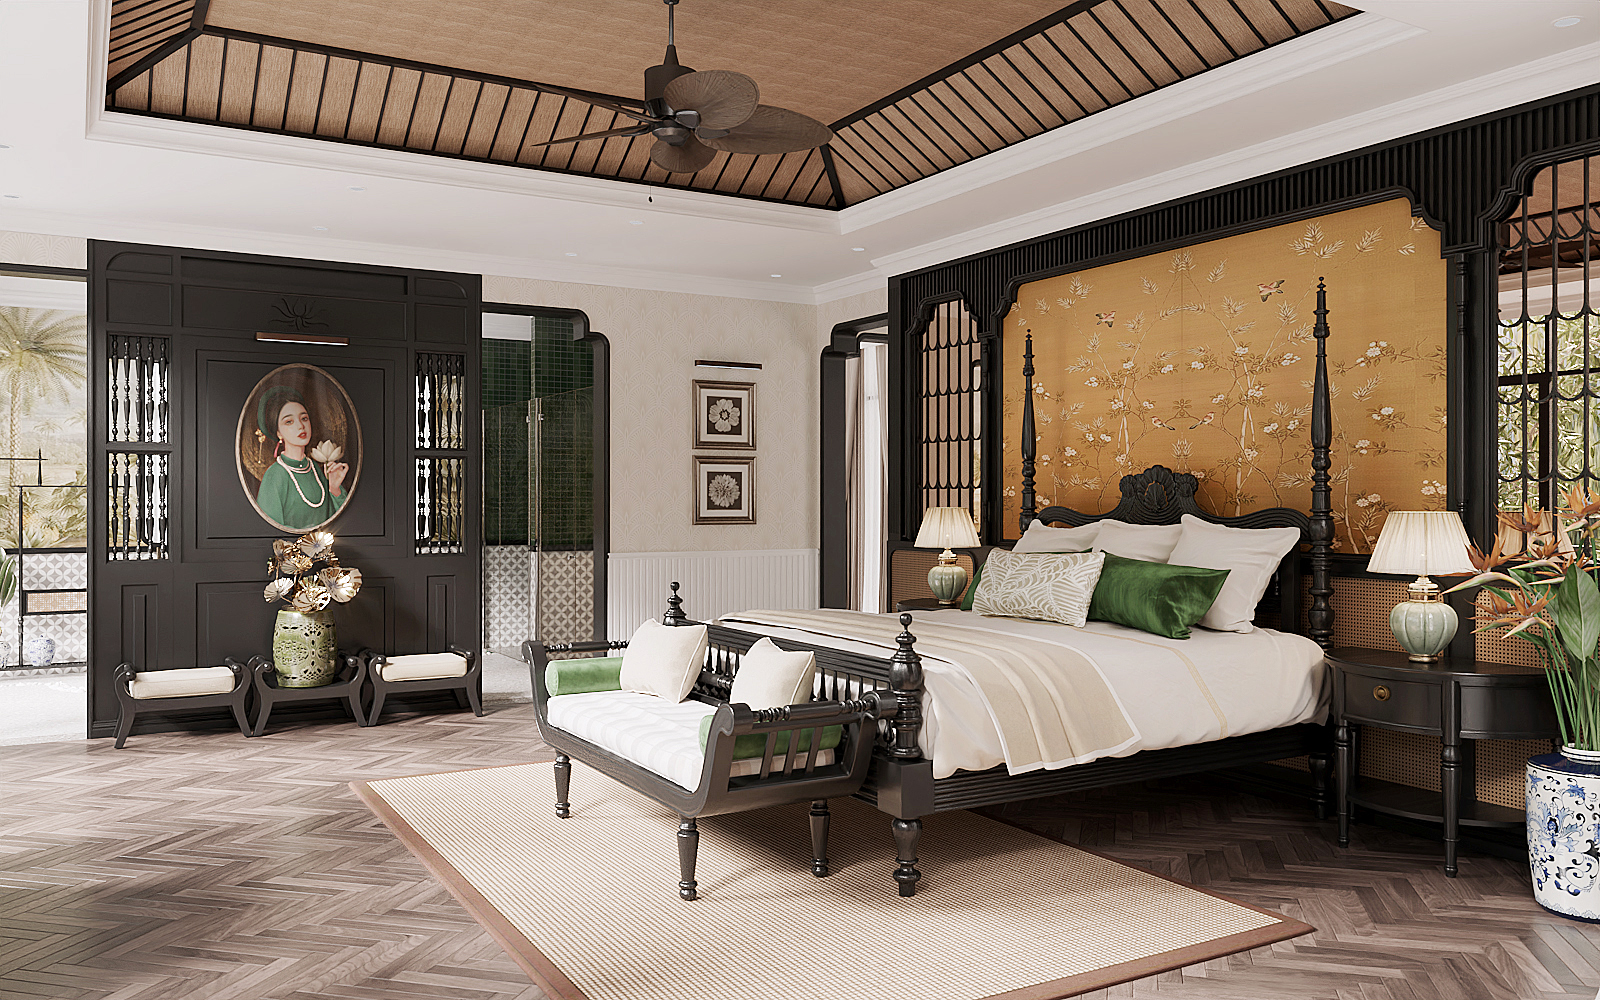 Thiết kế nội thất phòng ngủ indochine tại Quảng Ninh